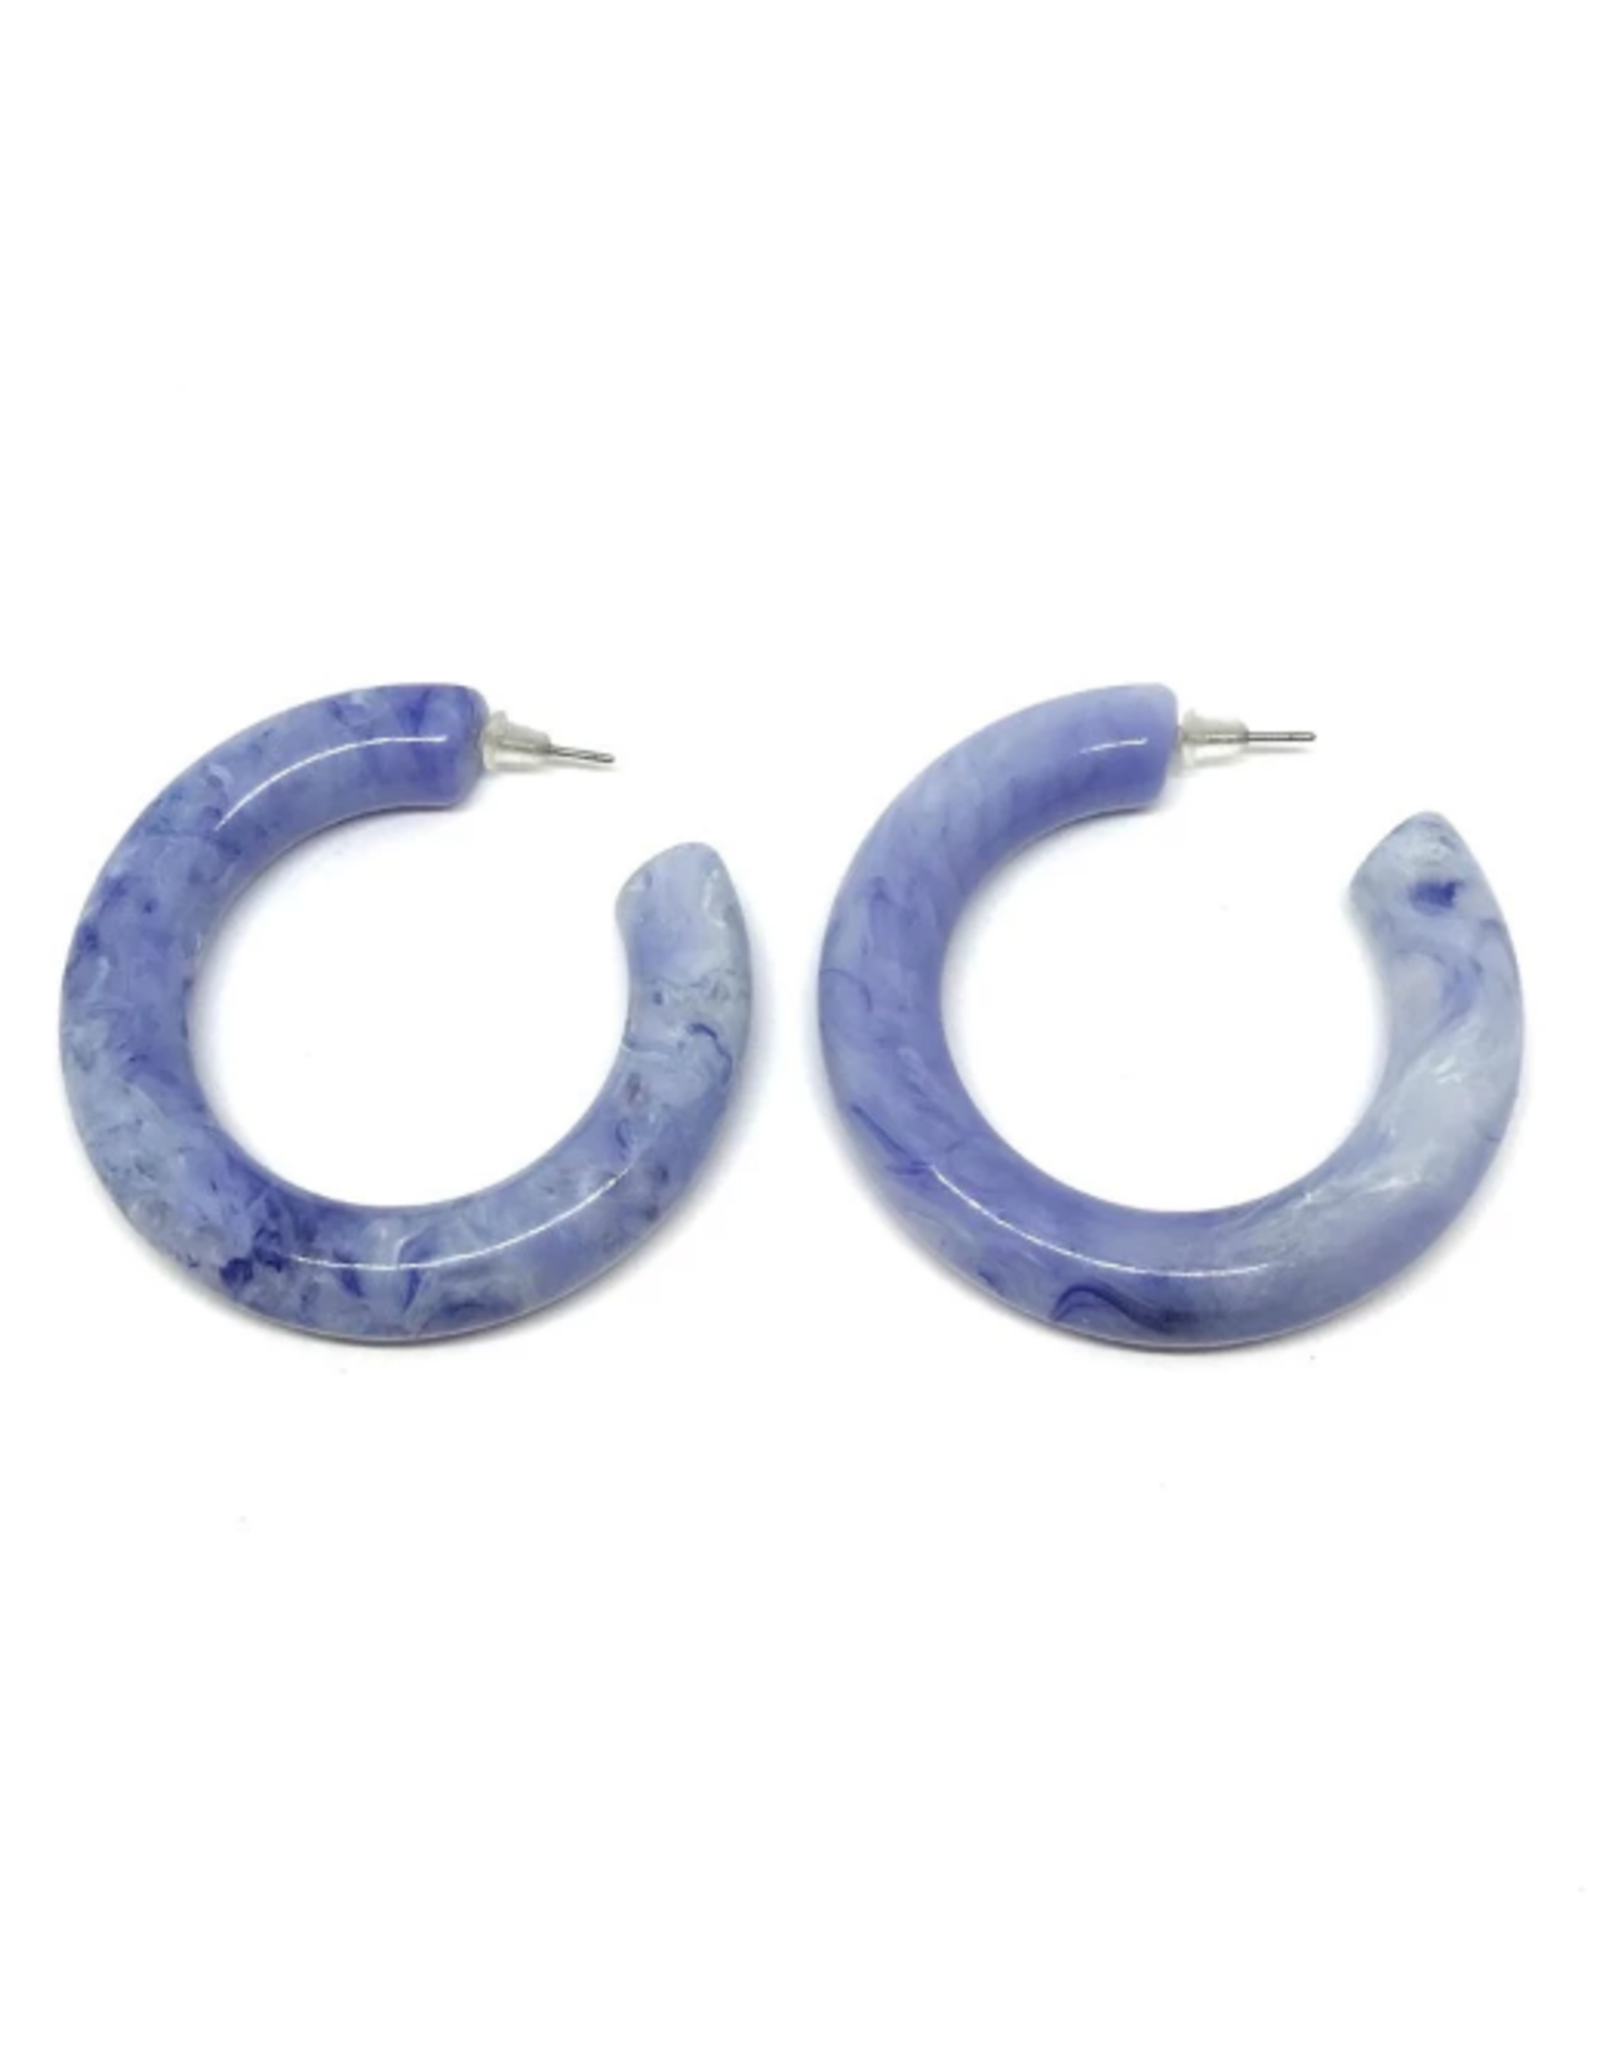 Vayu Jewels Sayulita Earrings - Ocean